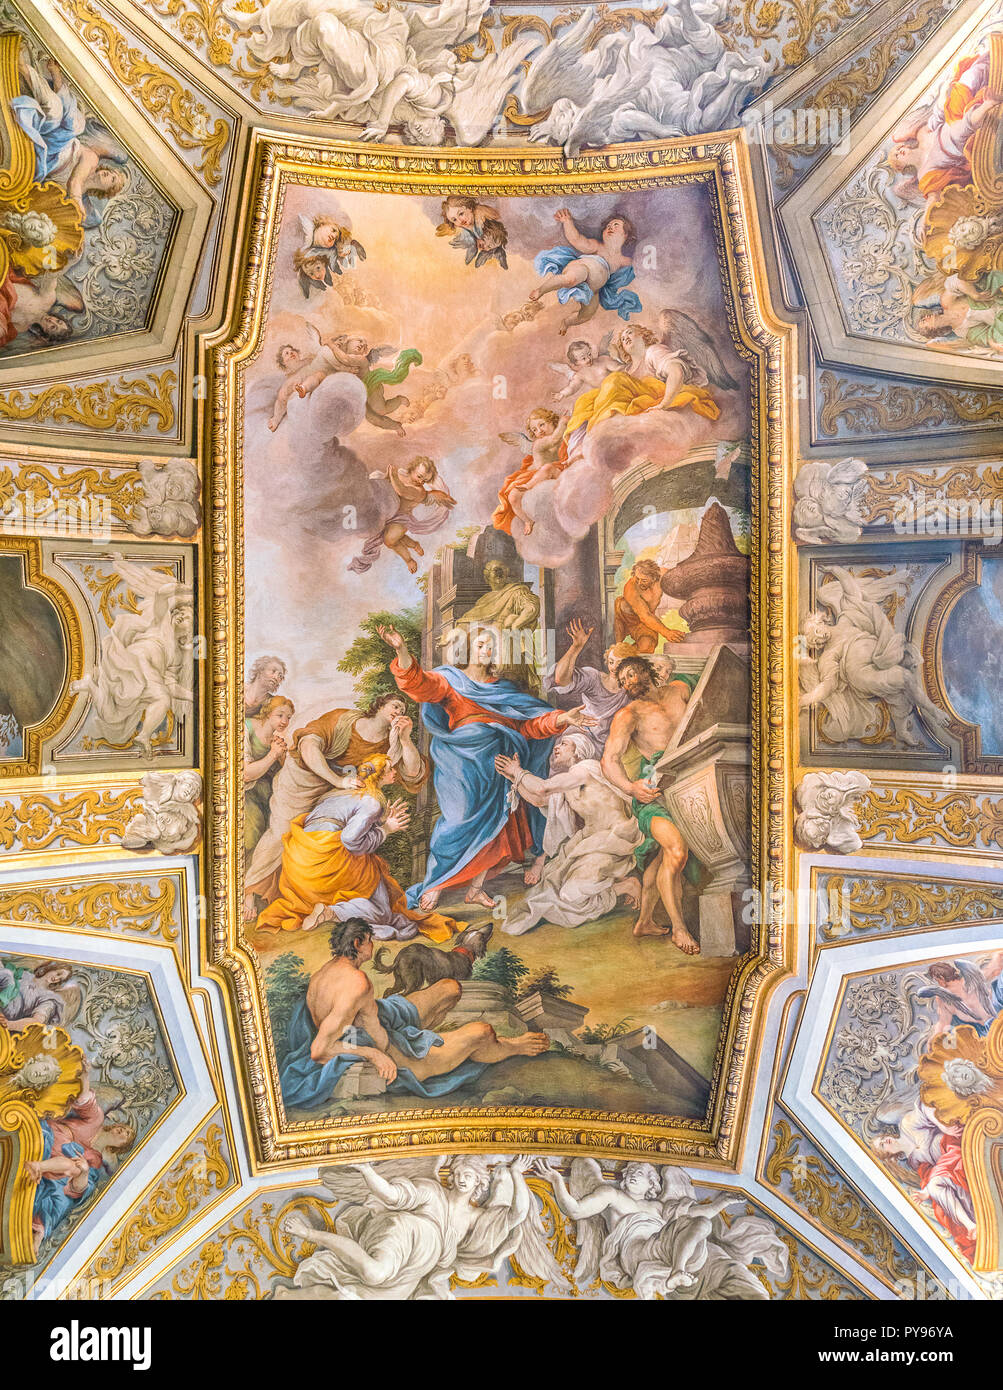 Fresco", die Auferweckung des Lazarus im Gebet seiner Schwester Maria' von Michelangelo Cerruti. Kirche Santa Maria Maddalena in Rom, Italien. Stockfoto